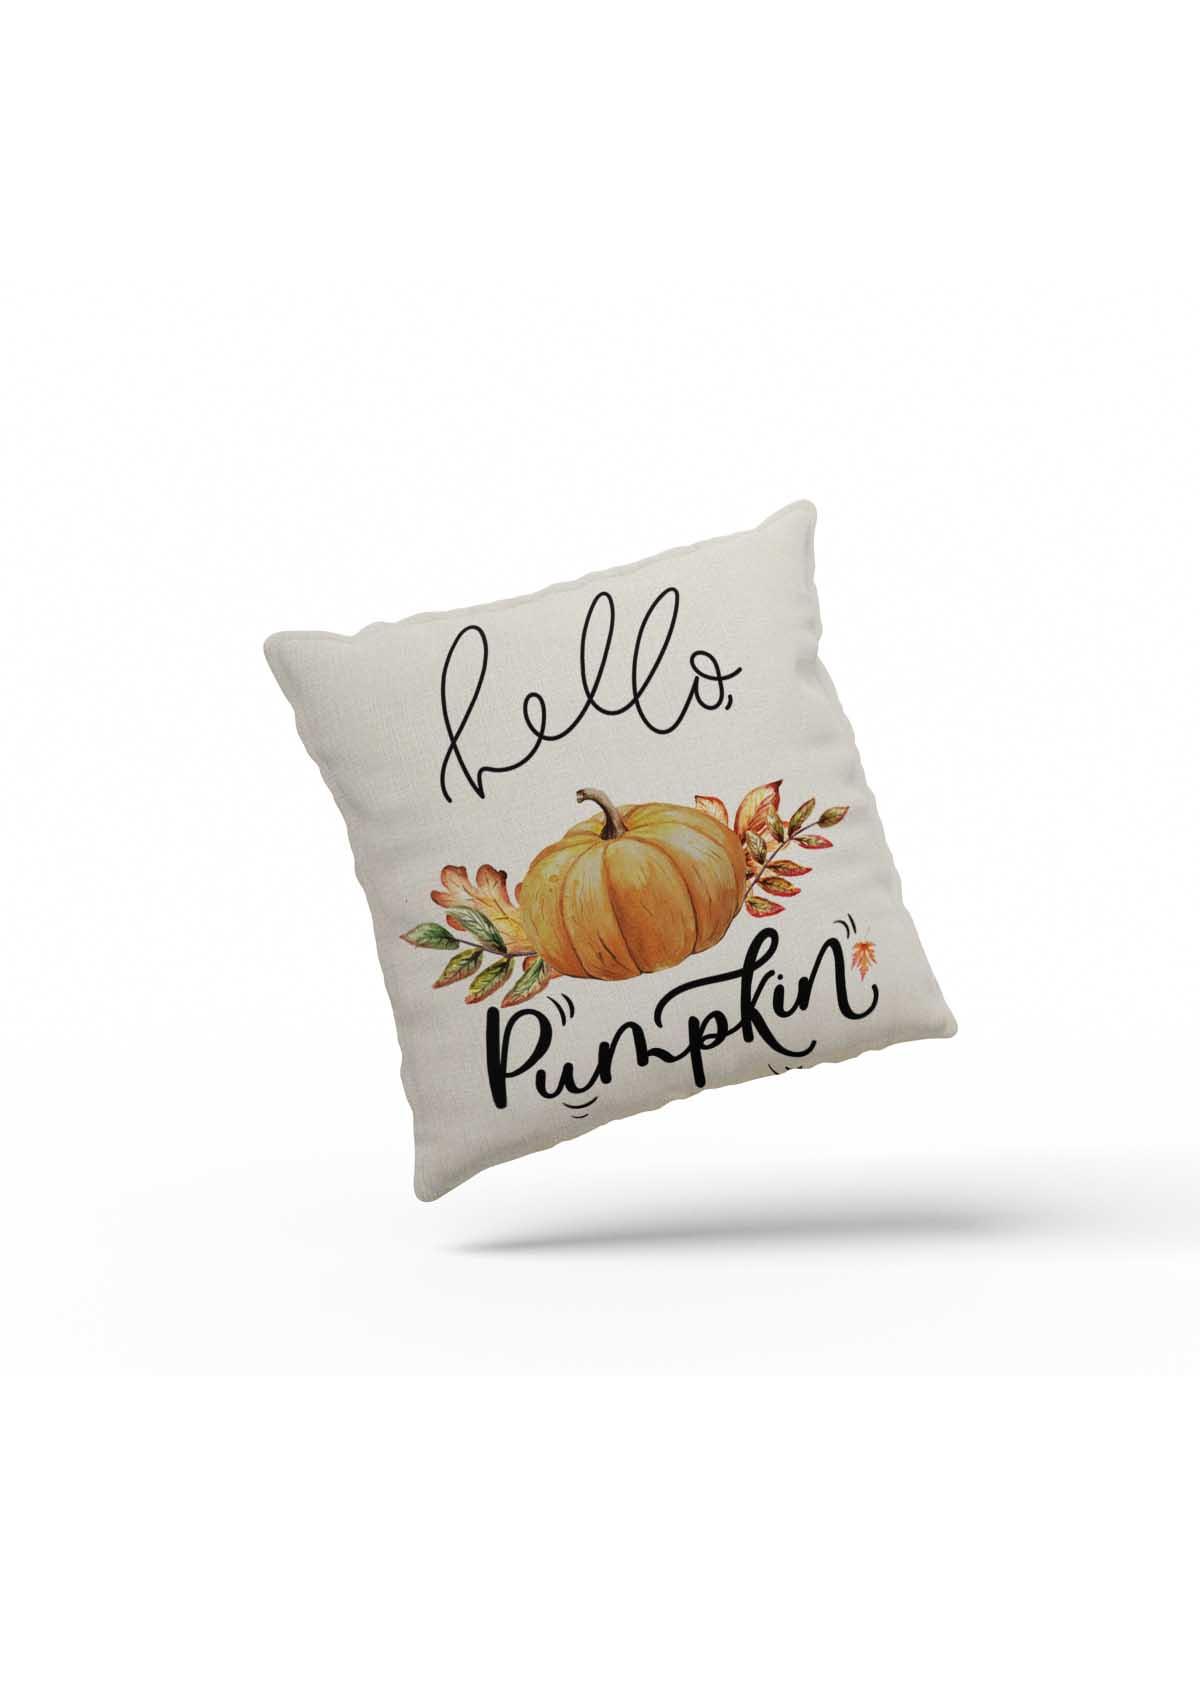 Pumpkin "Fall Inspired" Cushion Cover